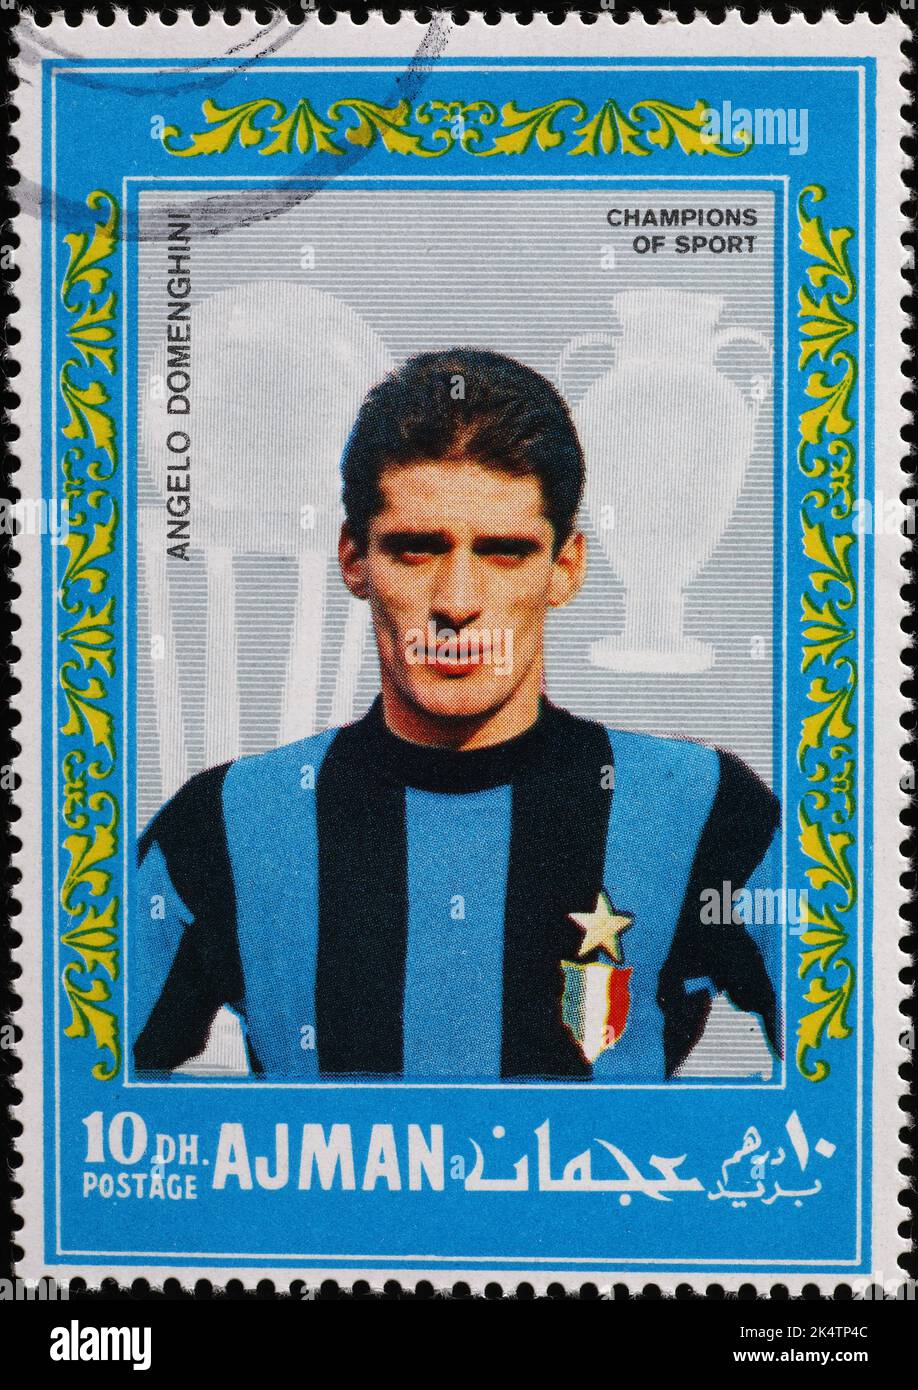 Angelo Domenghino calciatore su vecchio francobollo Foto Stock